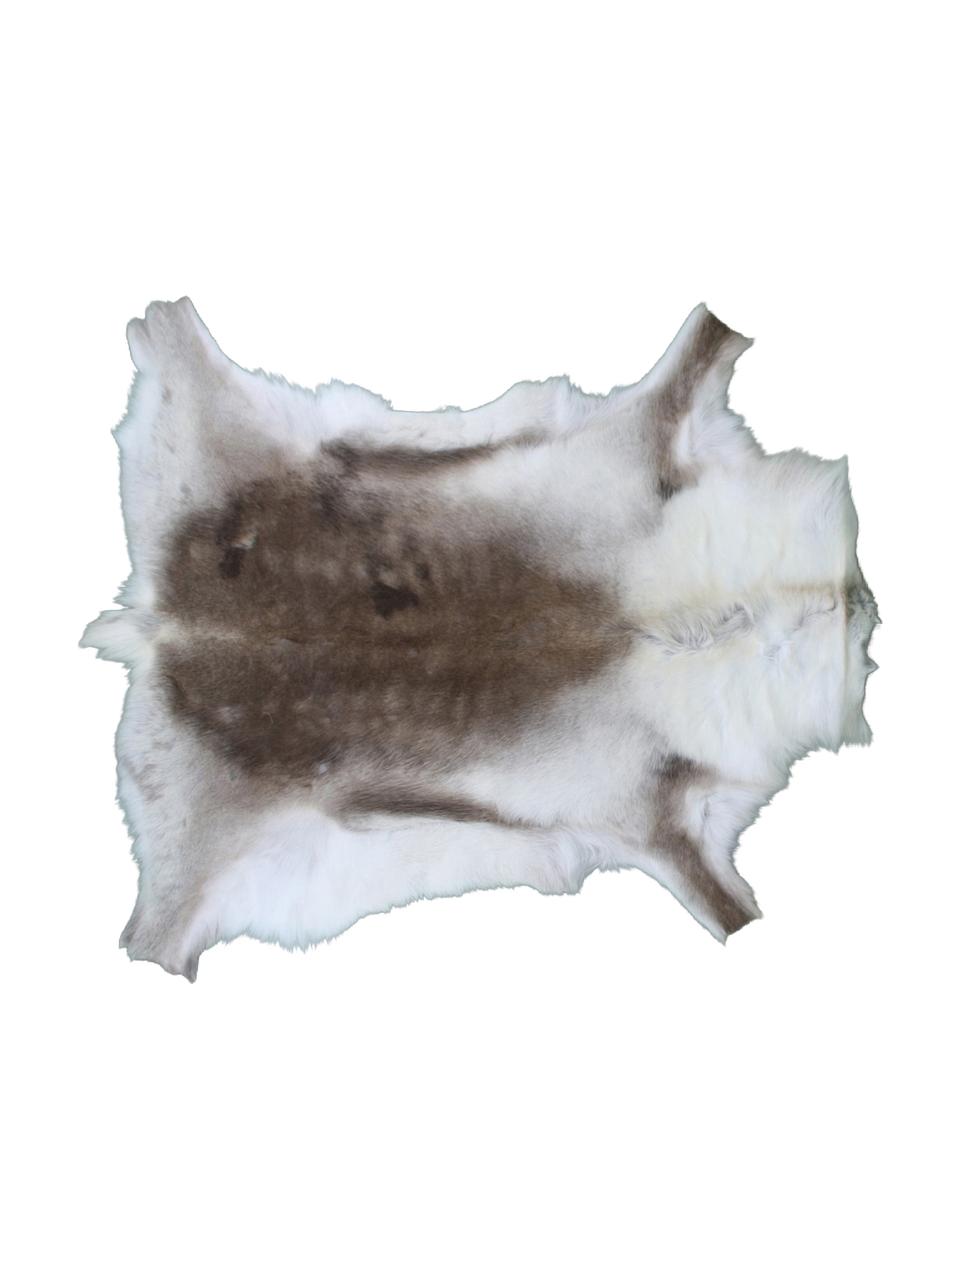 Dywan ze skóry renifera Marlen, Skóra renifera, Odcienie brązowego, biały, Unikatowa skóra z renifera 141, 75 x 115 cm